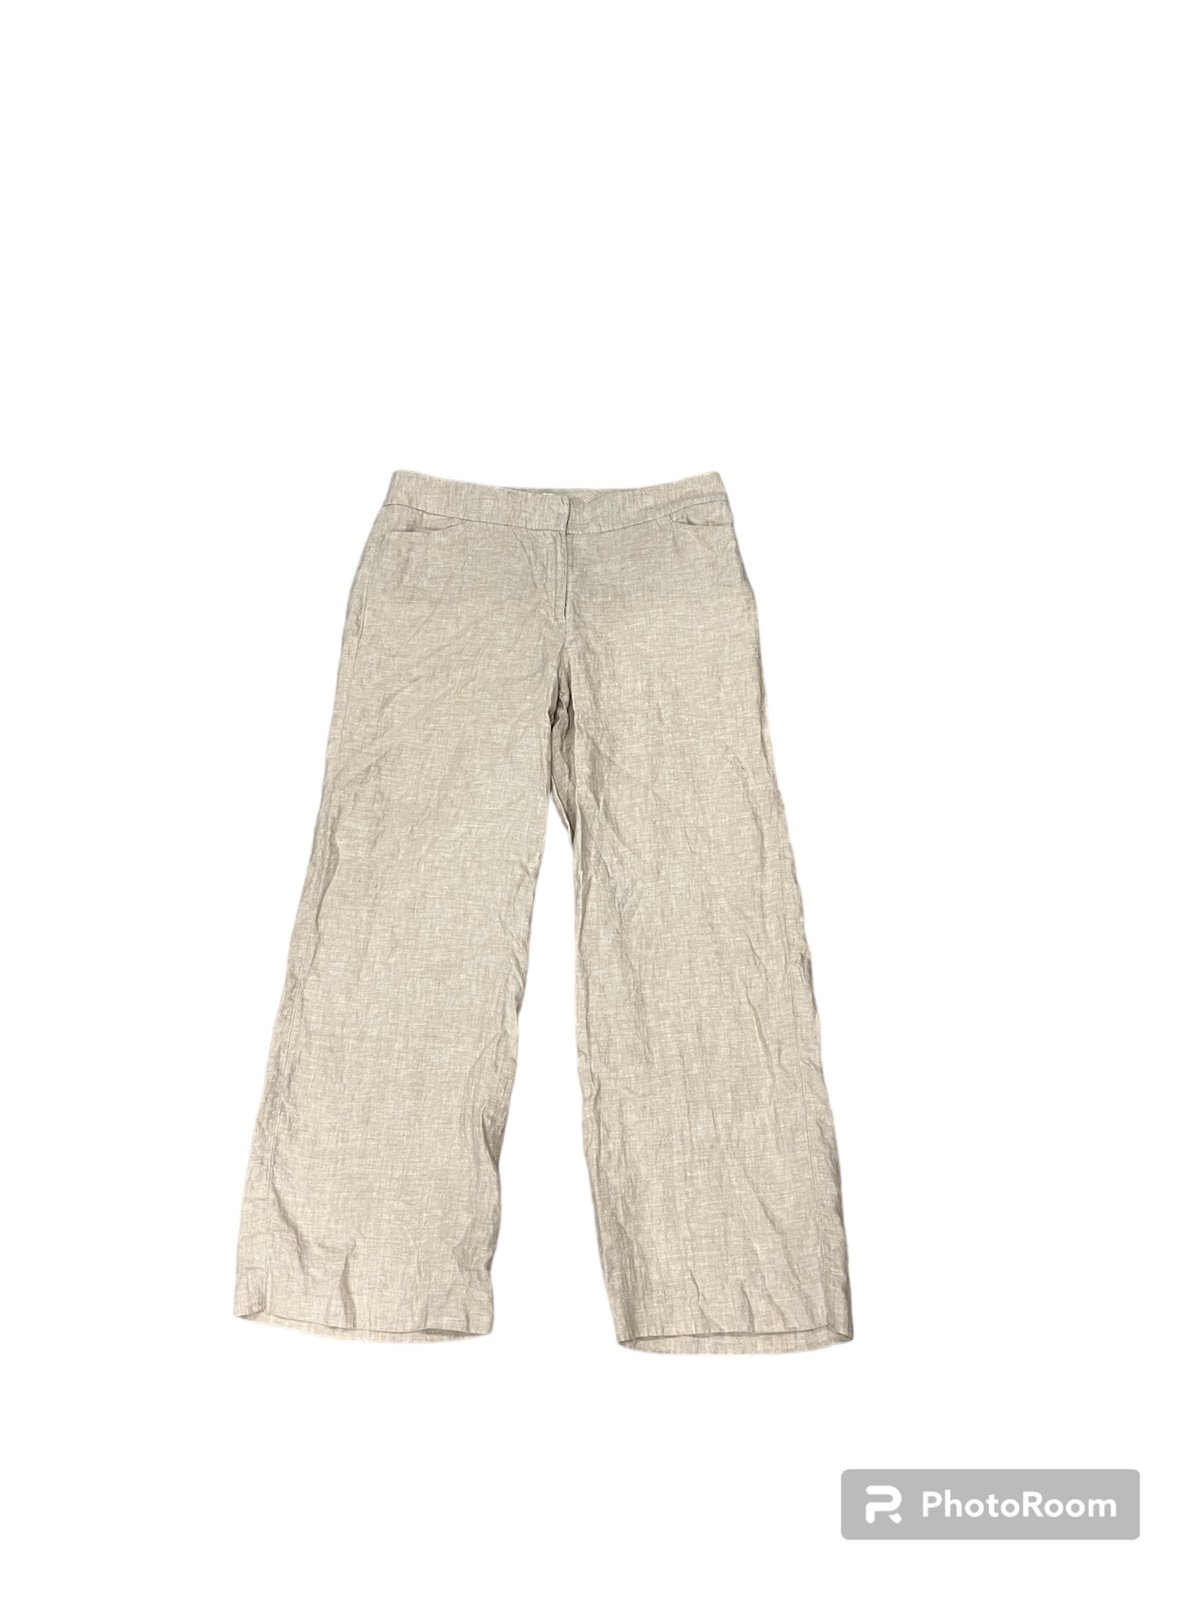 Classic Chico’s Beige Linen Wide Leg Pant Size 1.5 Short (M/10) ncQrhdjZq for sale